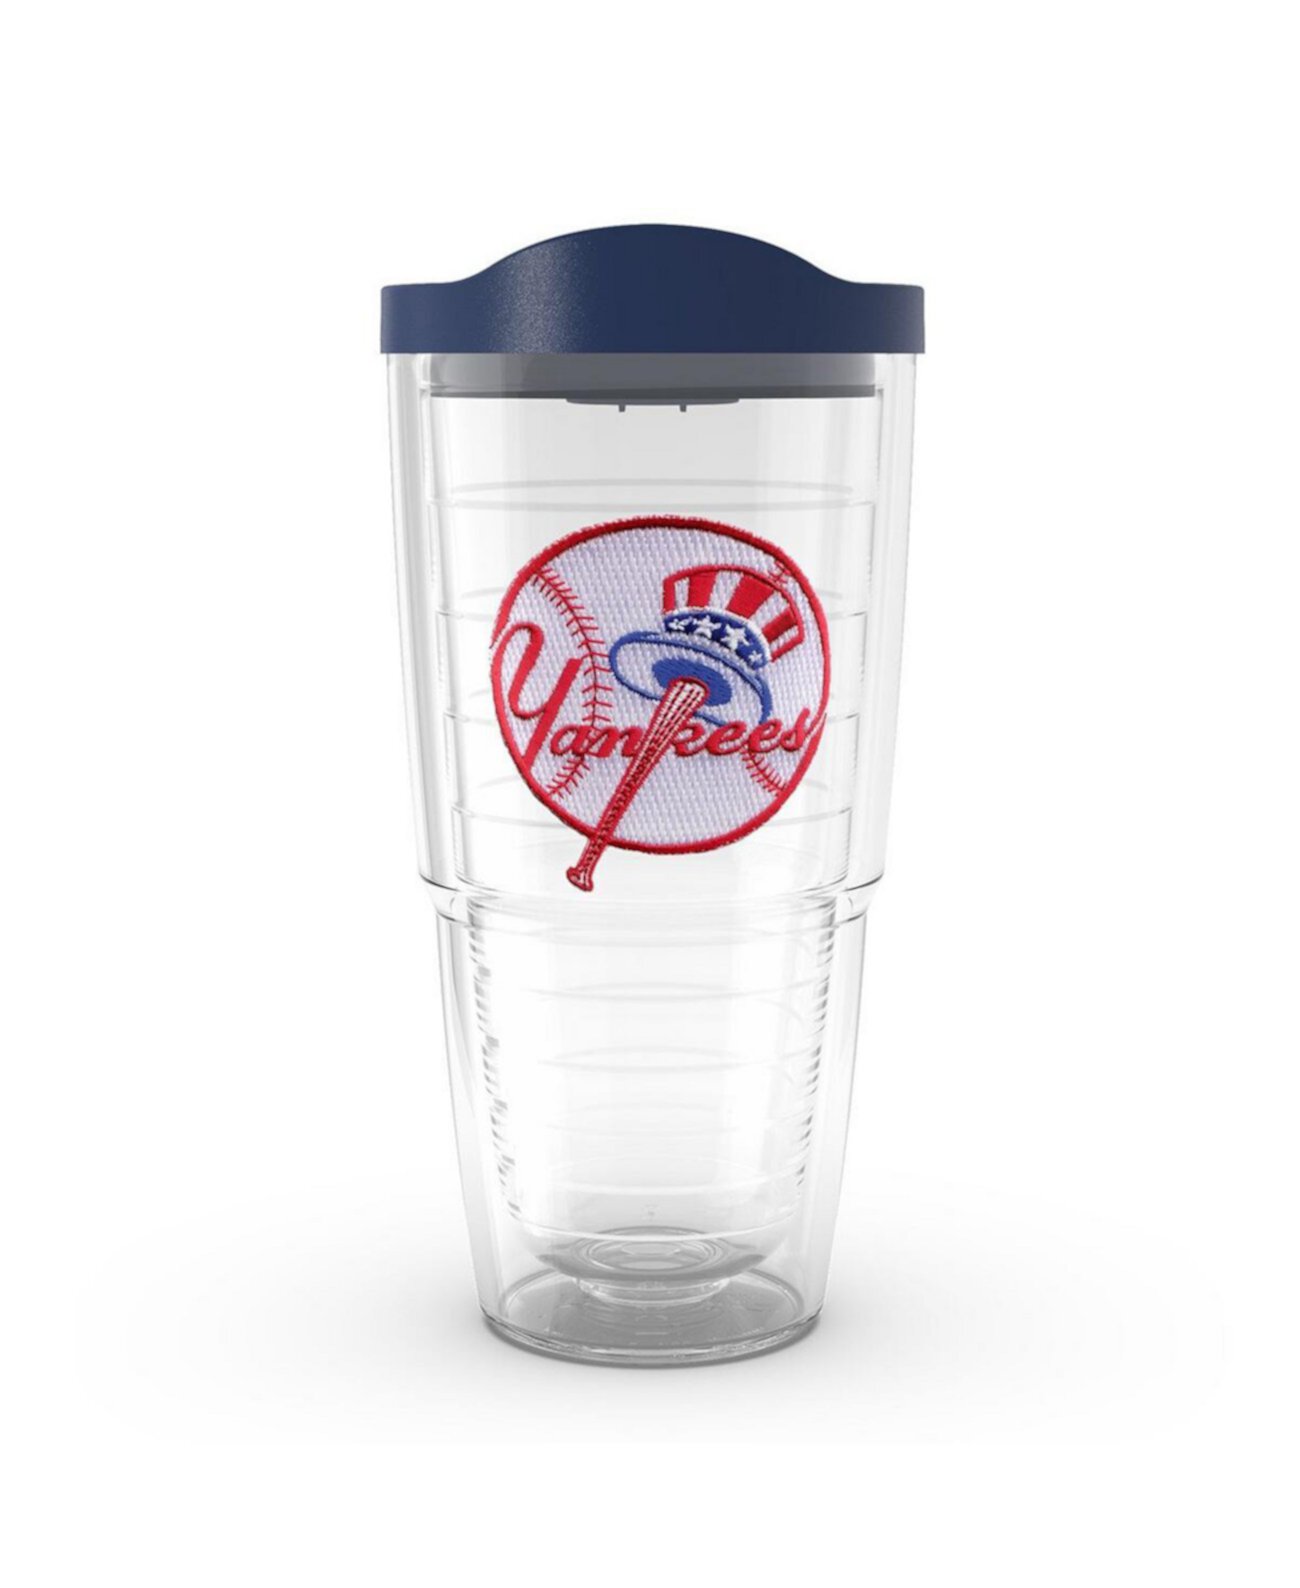 Классический стакан с эмблемой New York Yankees емкостью 24 унции Tervis